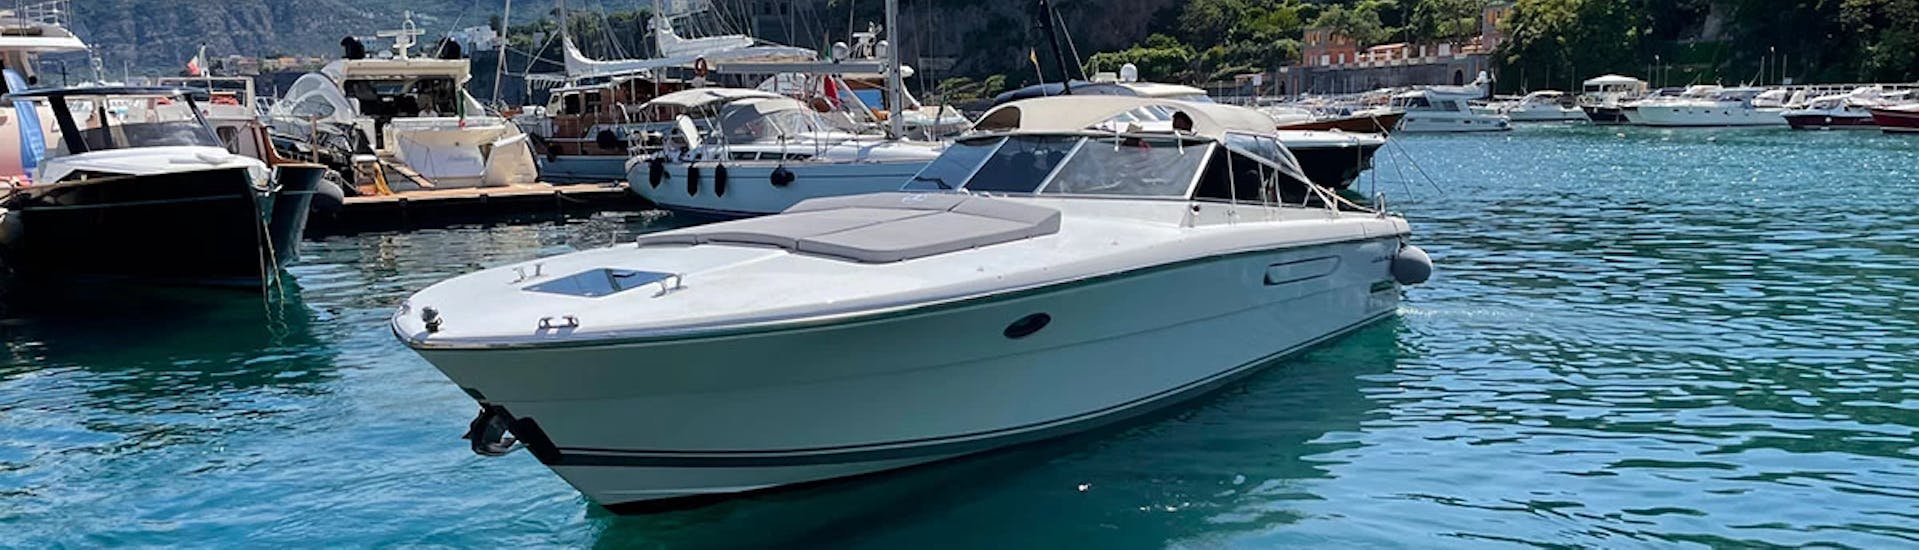 La barca Itama 38, una delle due barche utilizzate per la Gita in barca privata da Capri ad Amalfi e Positano con Giuliani Charter Sorrento.